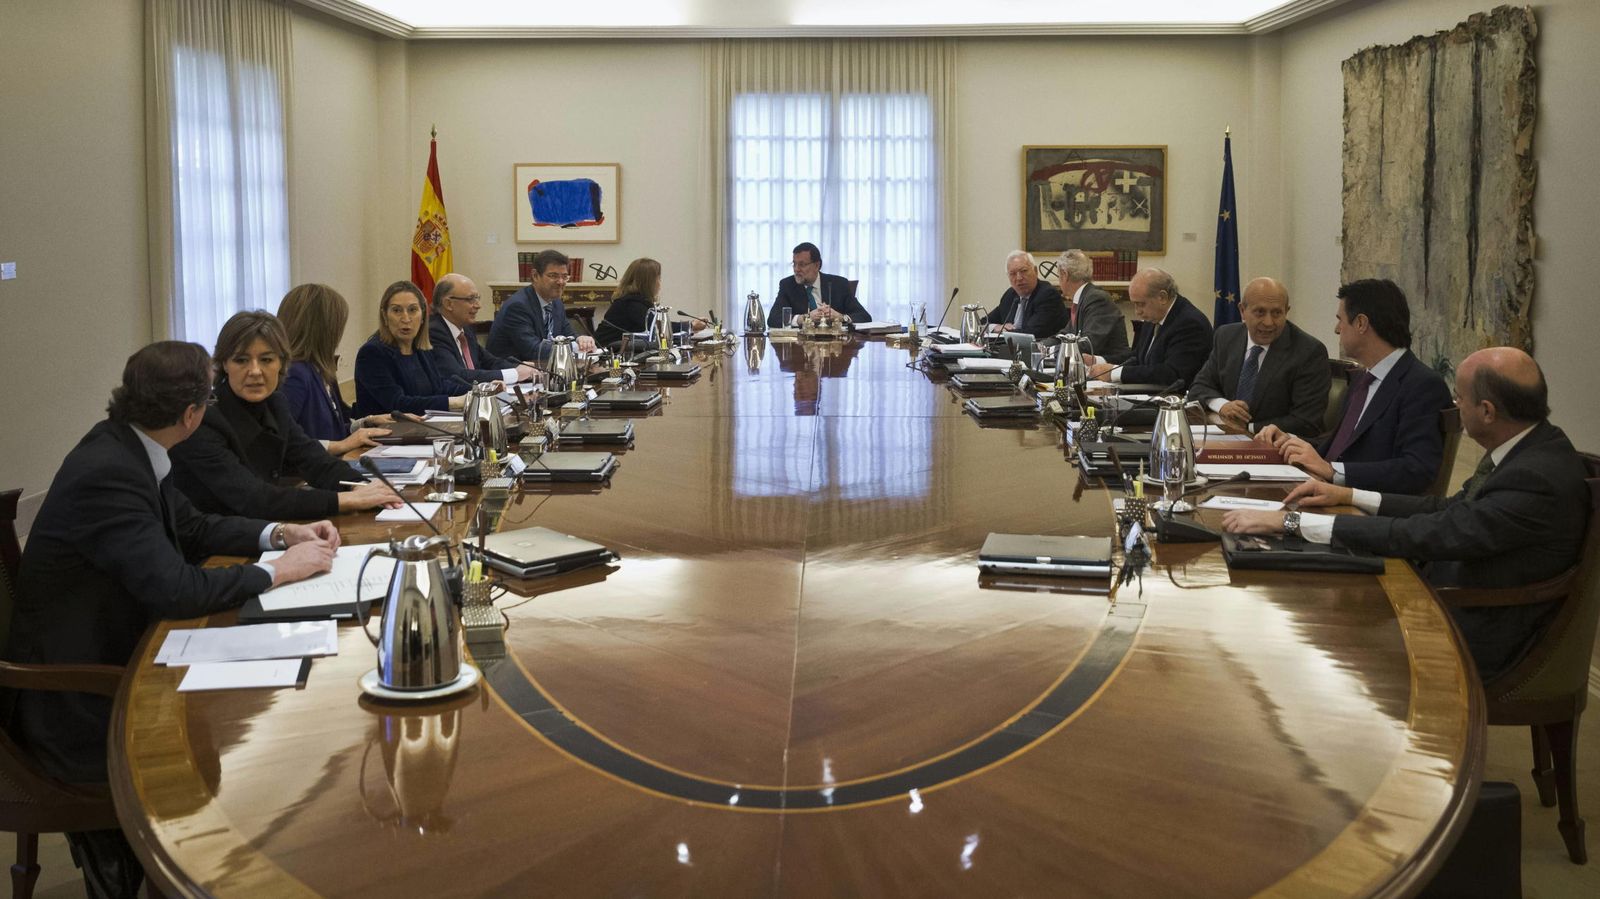 Foto: l presidente del Gobierno, Mariano Rajoy, preside la reunión del Consejo de Ministros. (EFE)